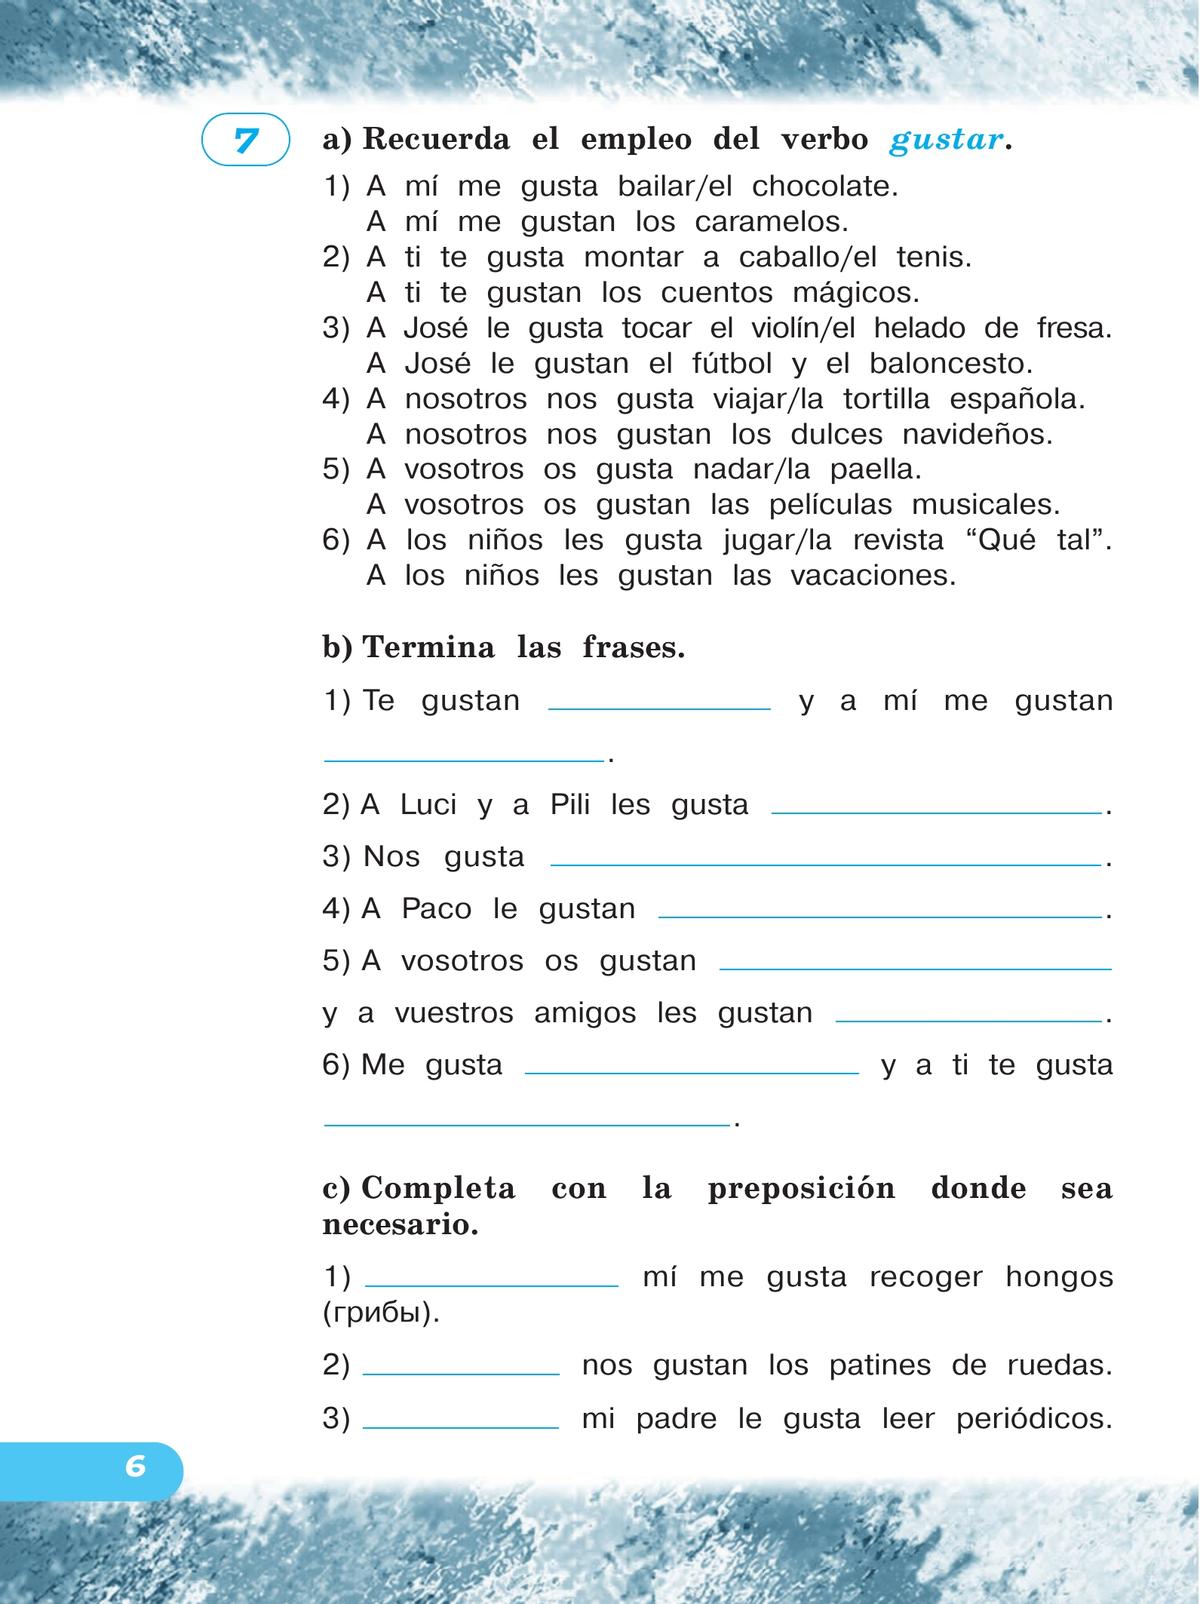 Испанский язык. Рабочая тетрадь. 4 класс. Углублённое изучение 5